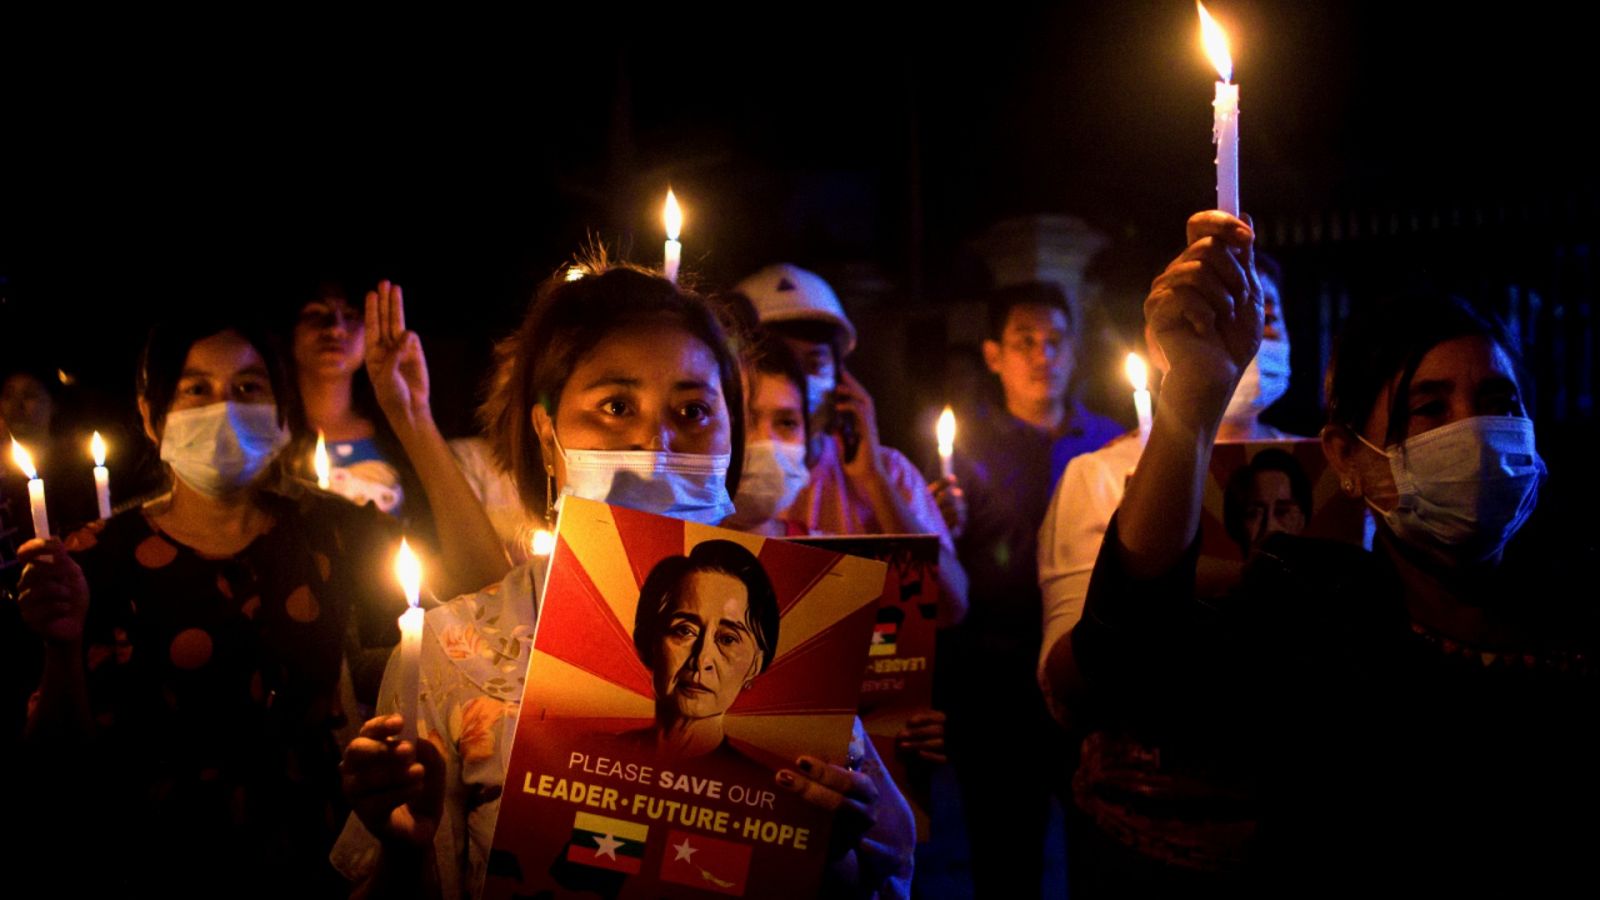 Imagen del 12 de marzo de 2021 de gente sosteniendo velas durante una protesta nocturna en Mandalay contra el golpe de Estado dado por la Junta militar de Birmania a principios del mes de febrero.